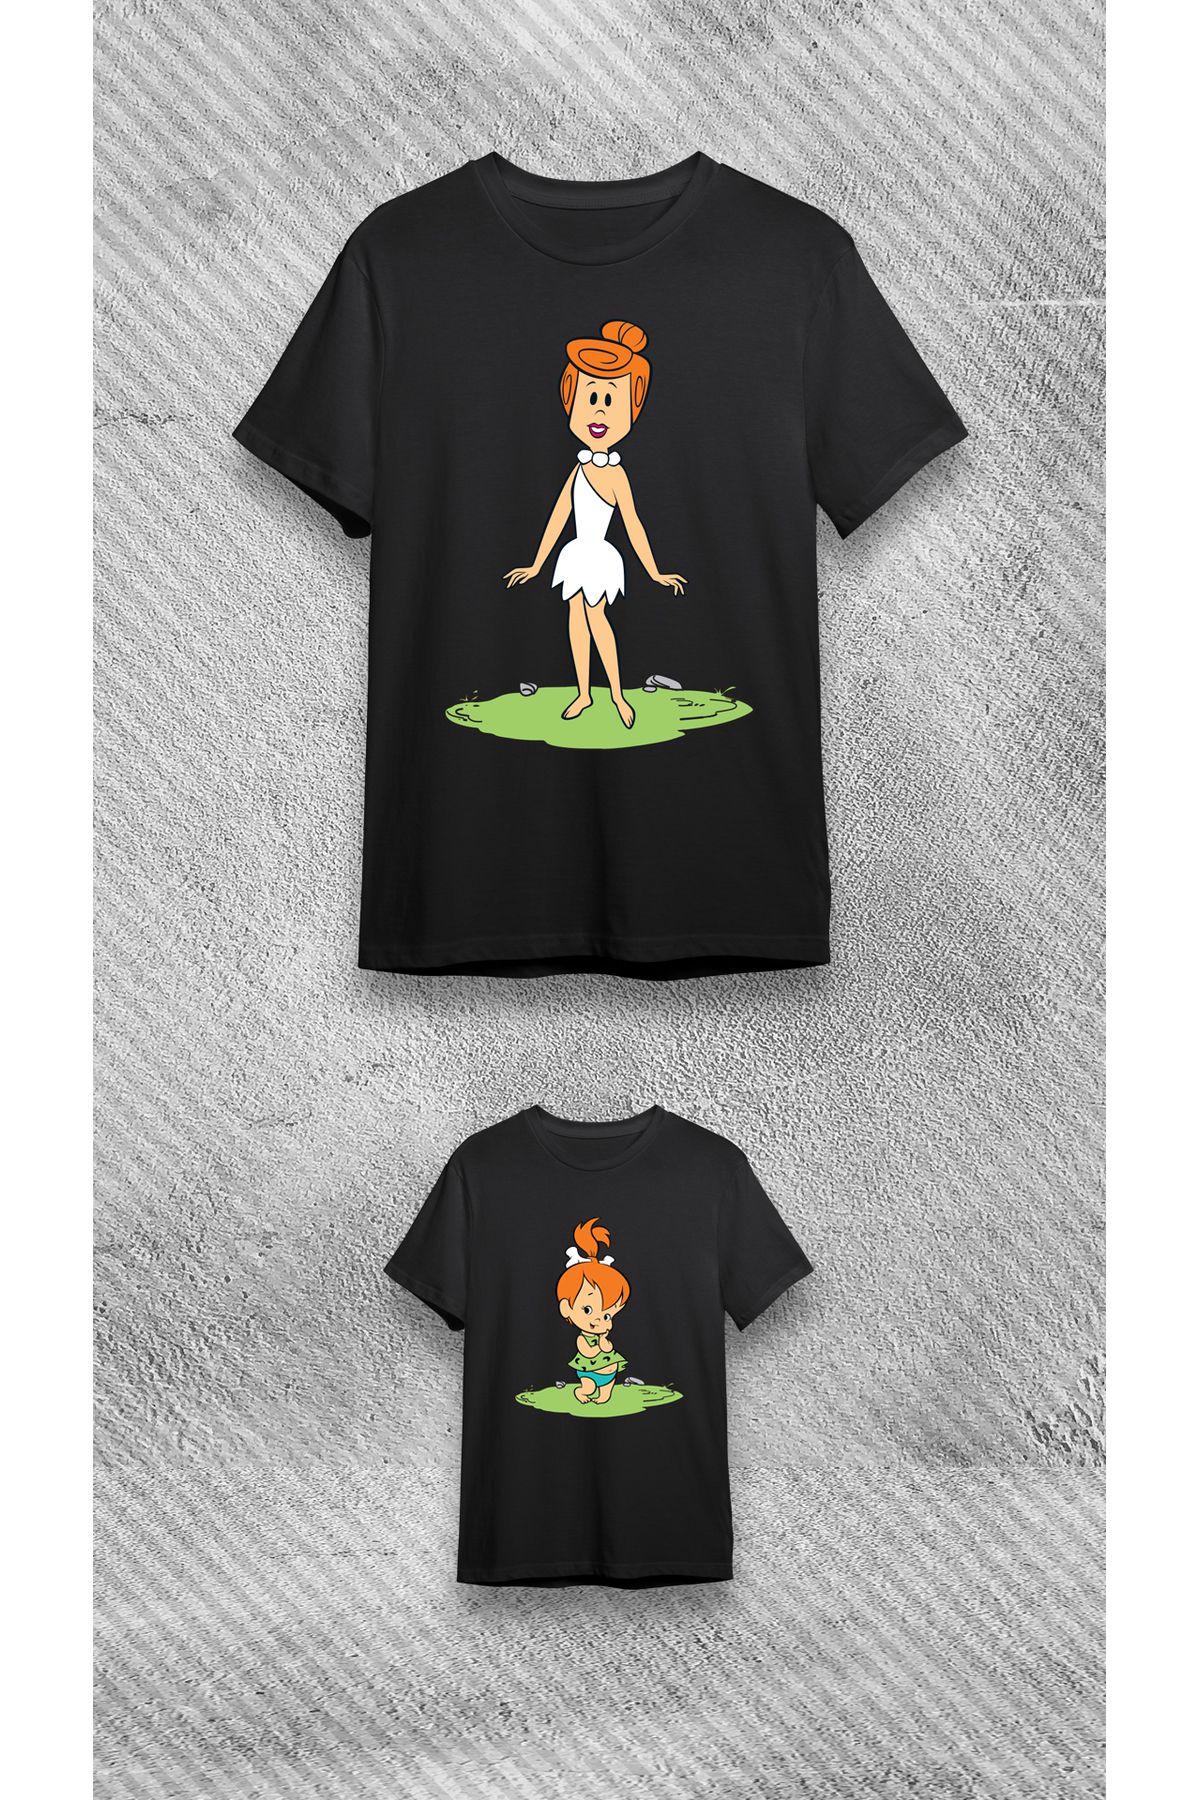 VİZYON İKRA Çakmaktaş Anne Kız T-Shirt/Tişört (tekli Üründür Kombin Yapmak Için 2 Adet Sepete Ekleyiniz)